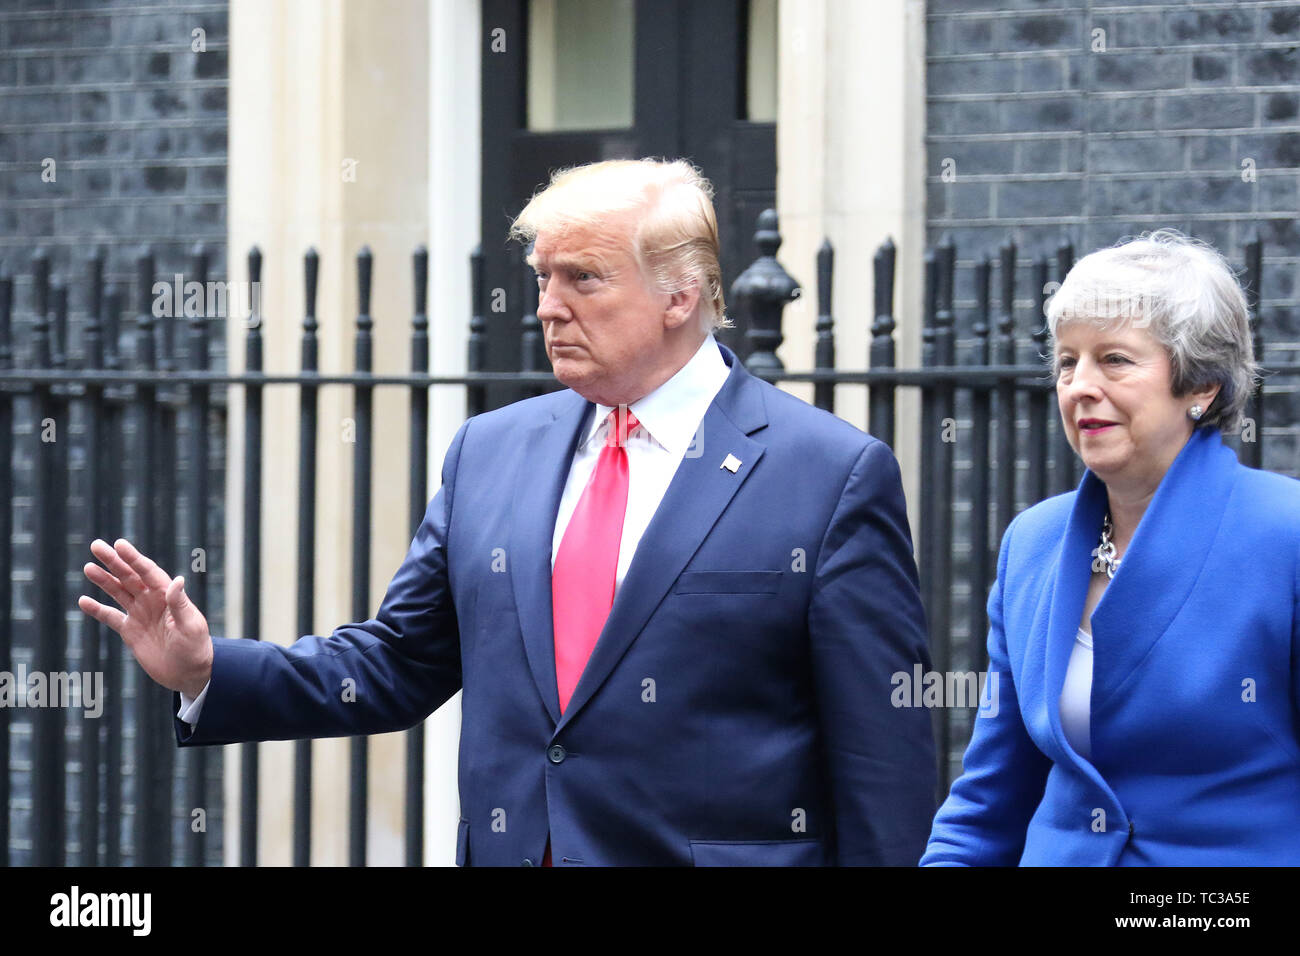 Theresa Maggio e Donald Trump, Stati Uniti d'America visita presidenziale per il Regno Unito, Downing Street, Londra, Regno Unito, 04 giugno 2019, Foto di R Foto Stock